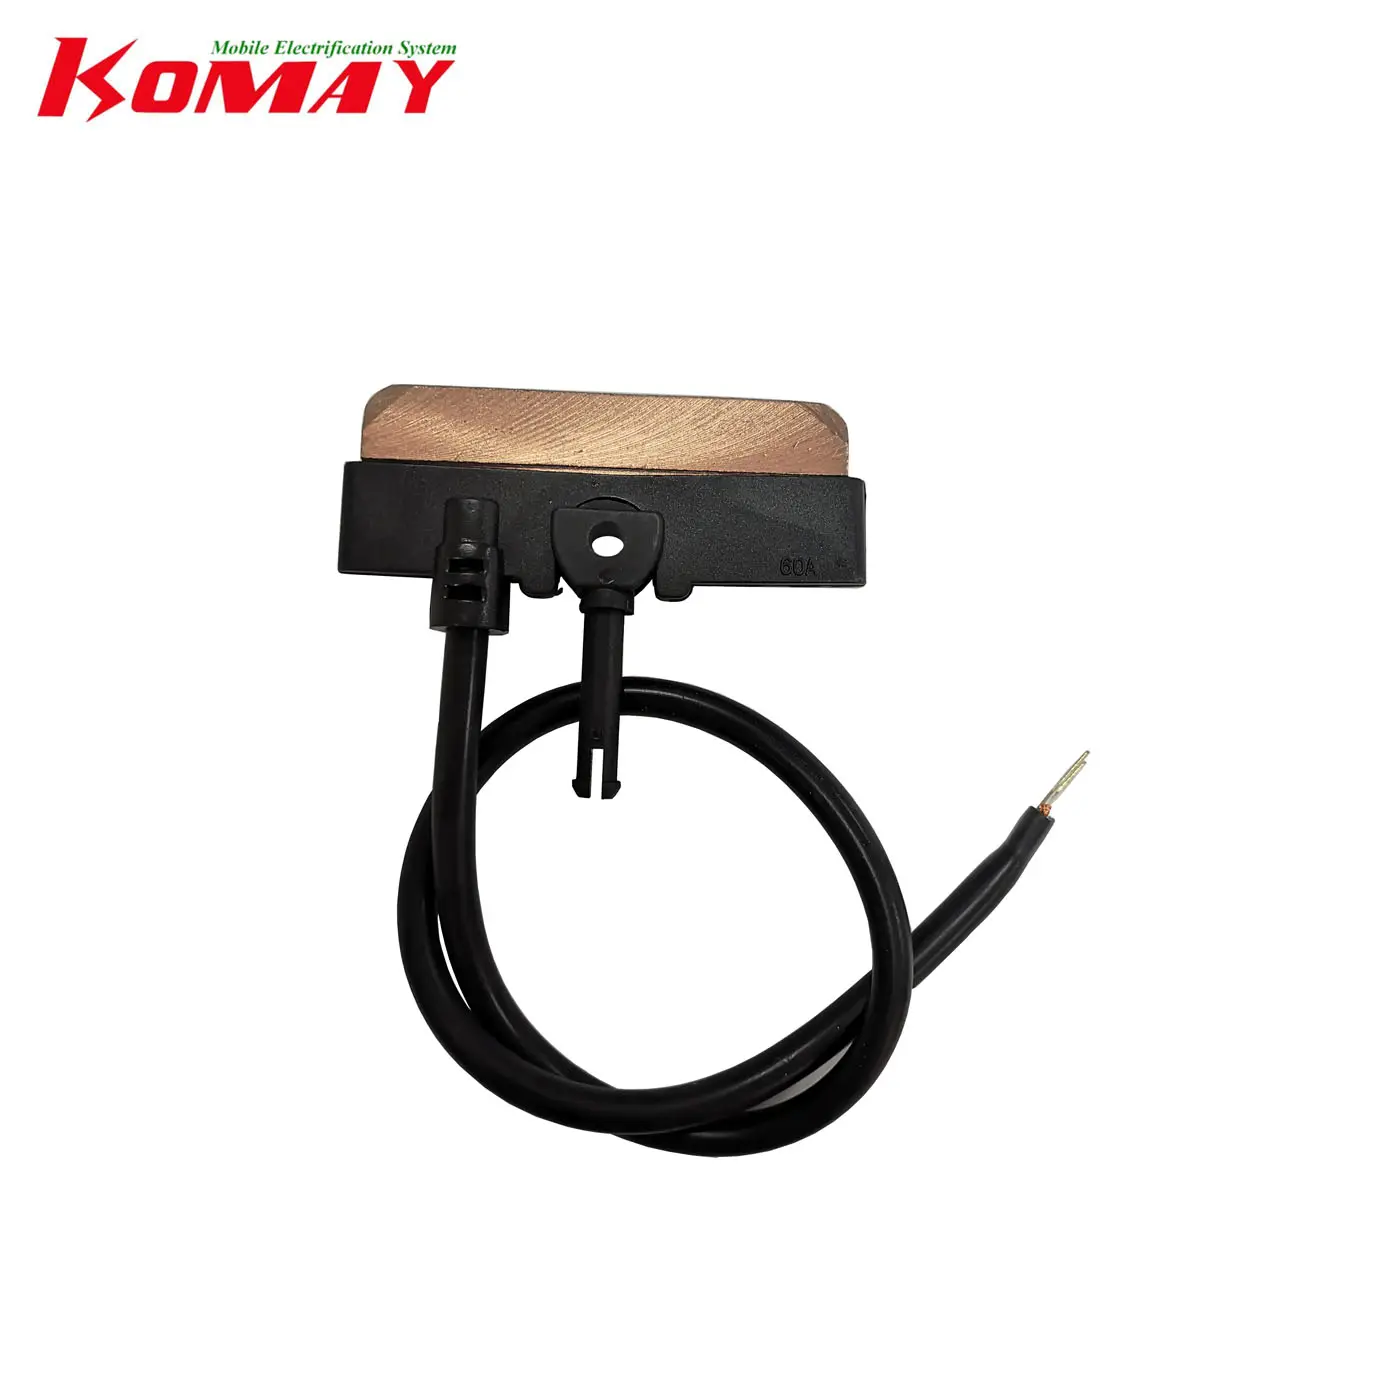 KOMAY 3P 4P 6Pシームレスコンダクターバスバーシステム電流コレクター